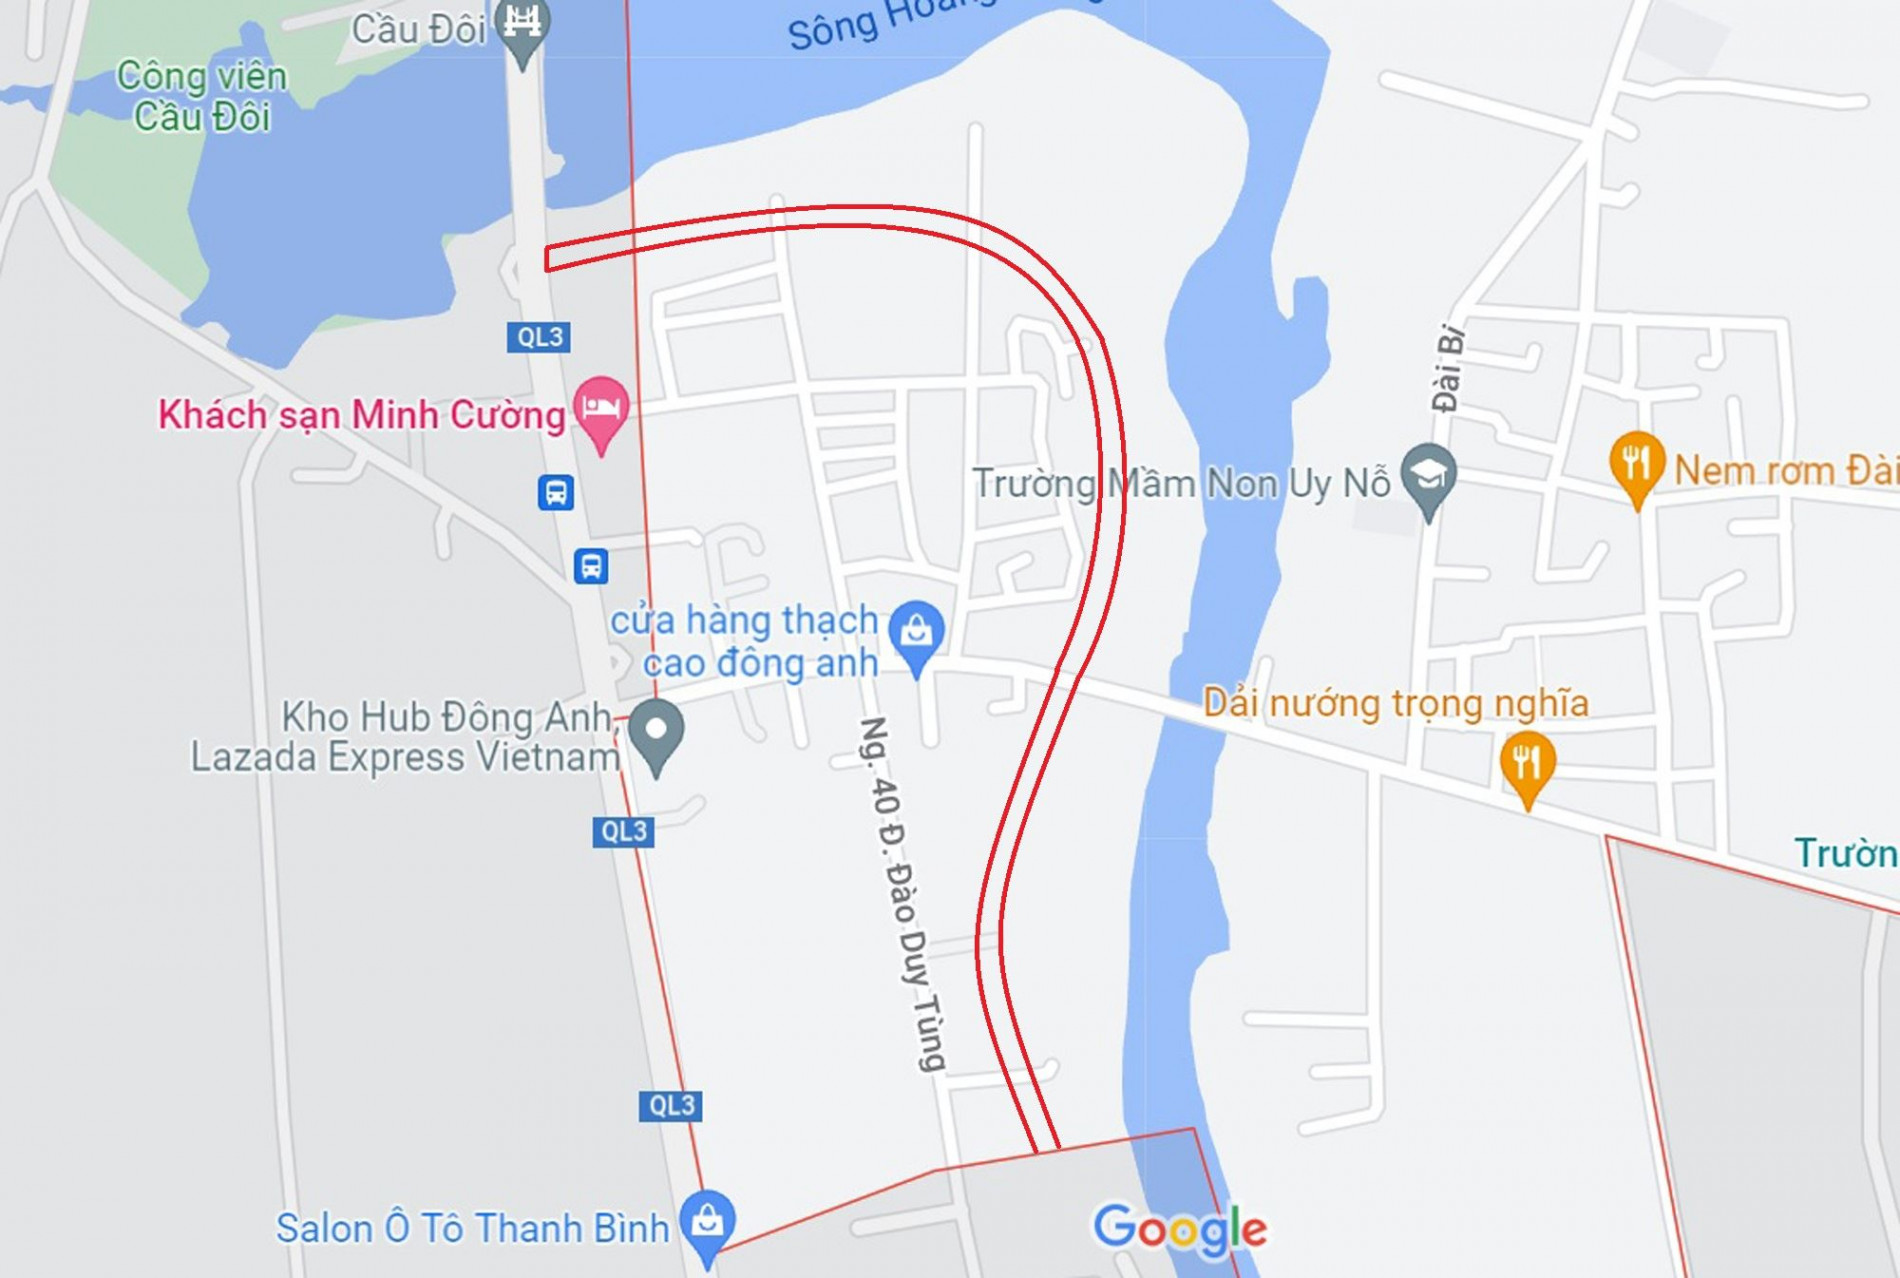 Đường sẽ mở theo quy hoạch ở xã Uy Nỗ, Đông Anh, Hà Nội (phần 2)